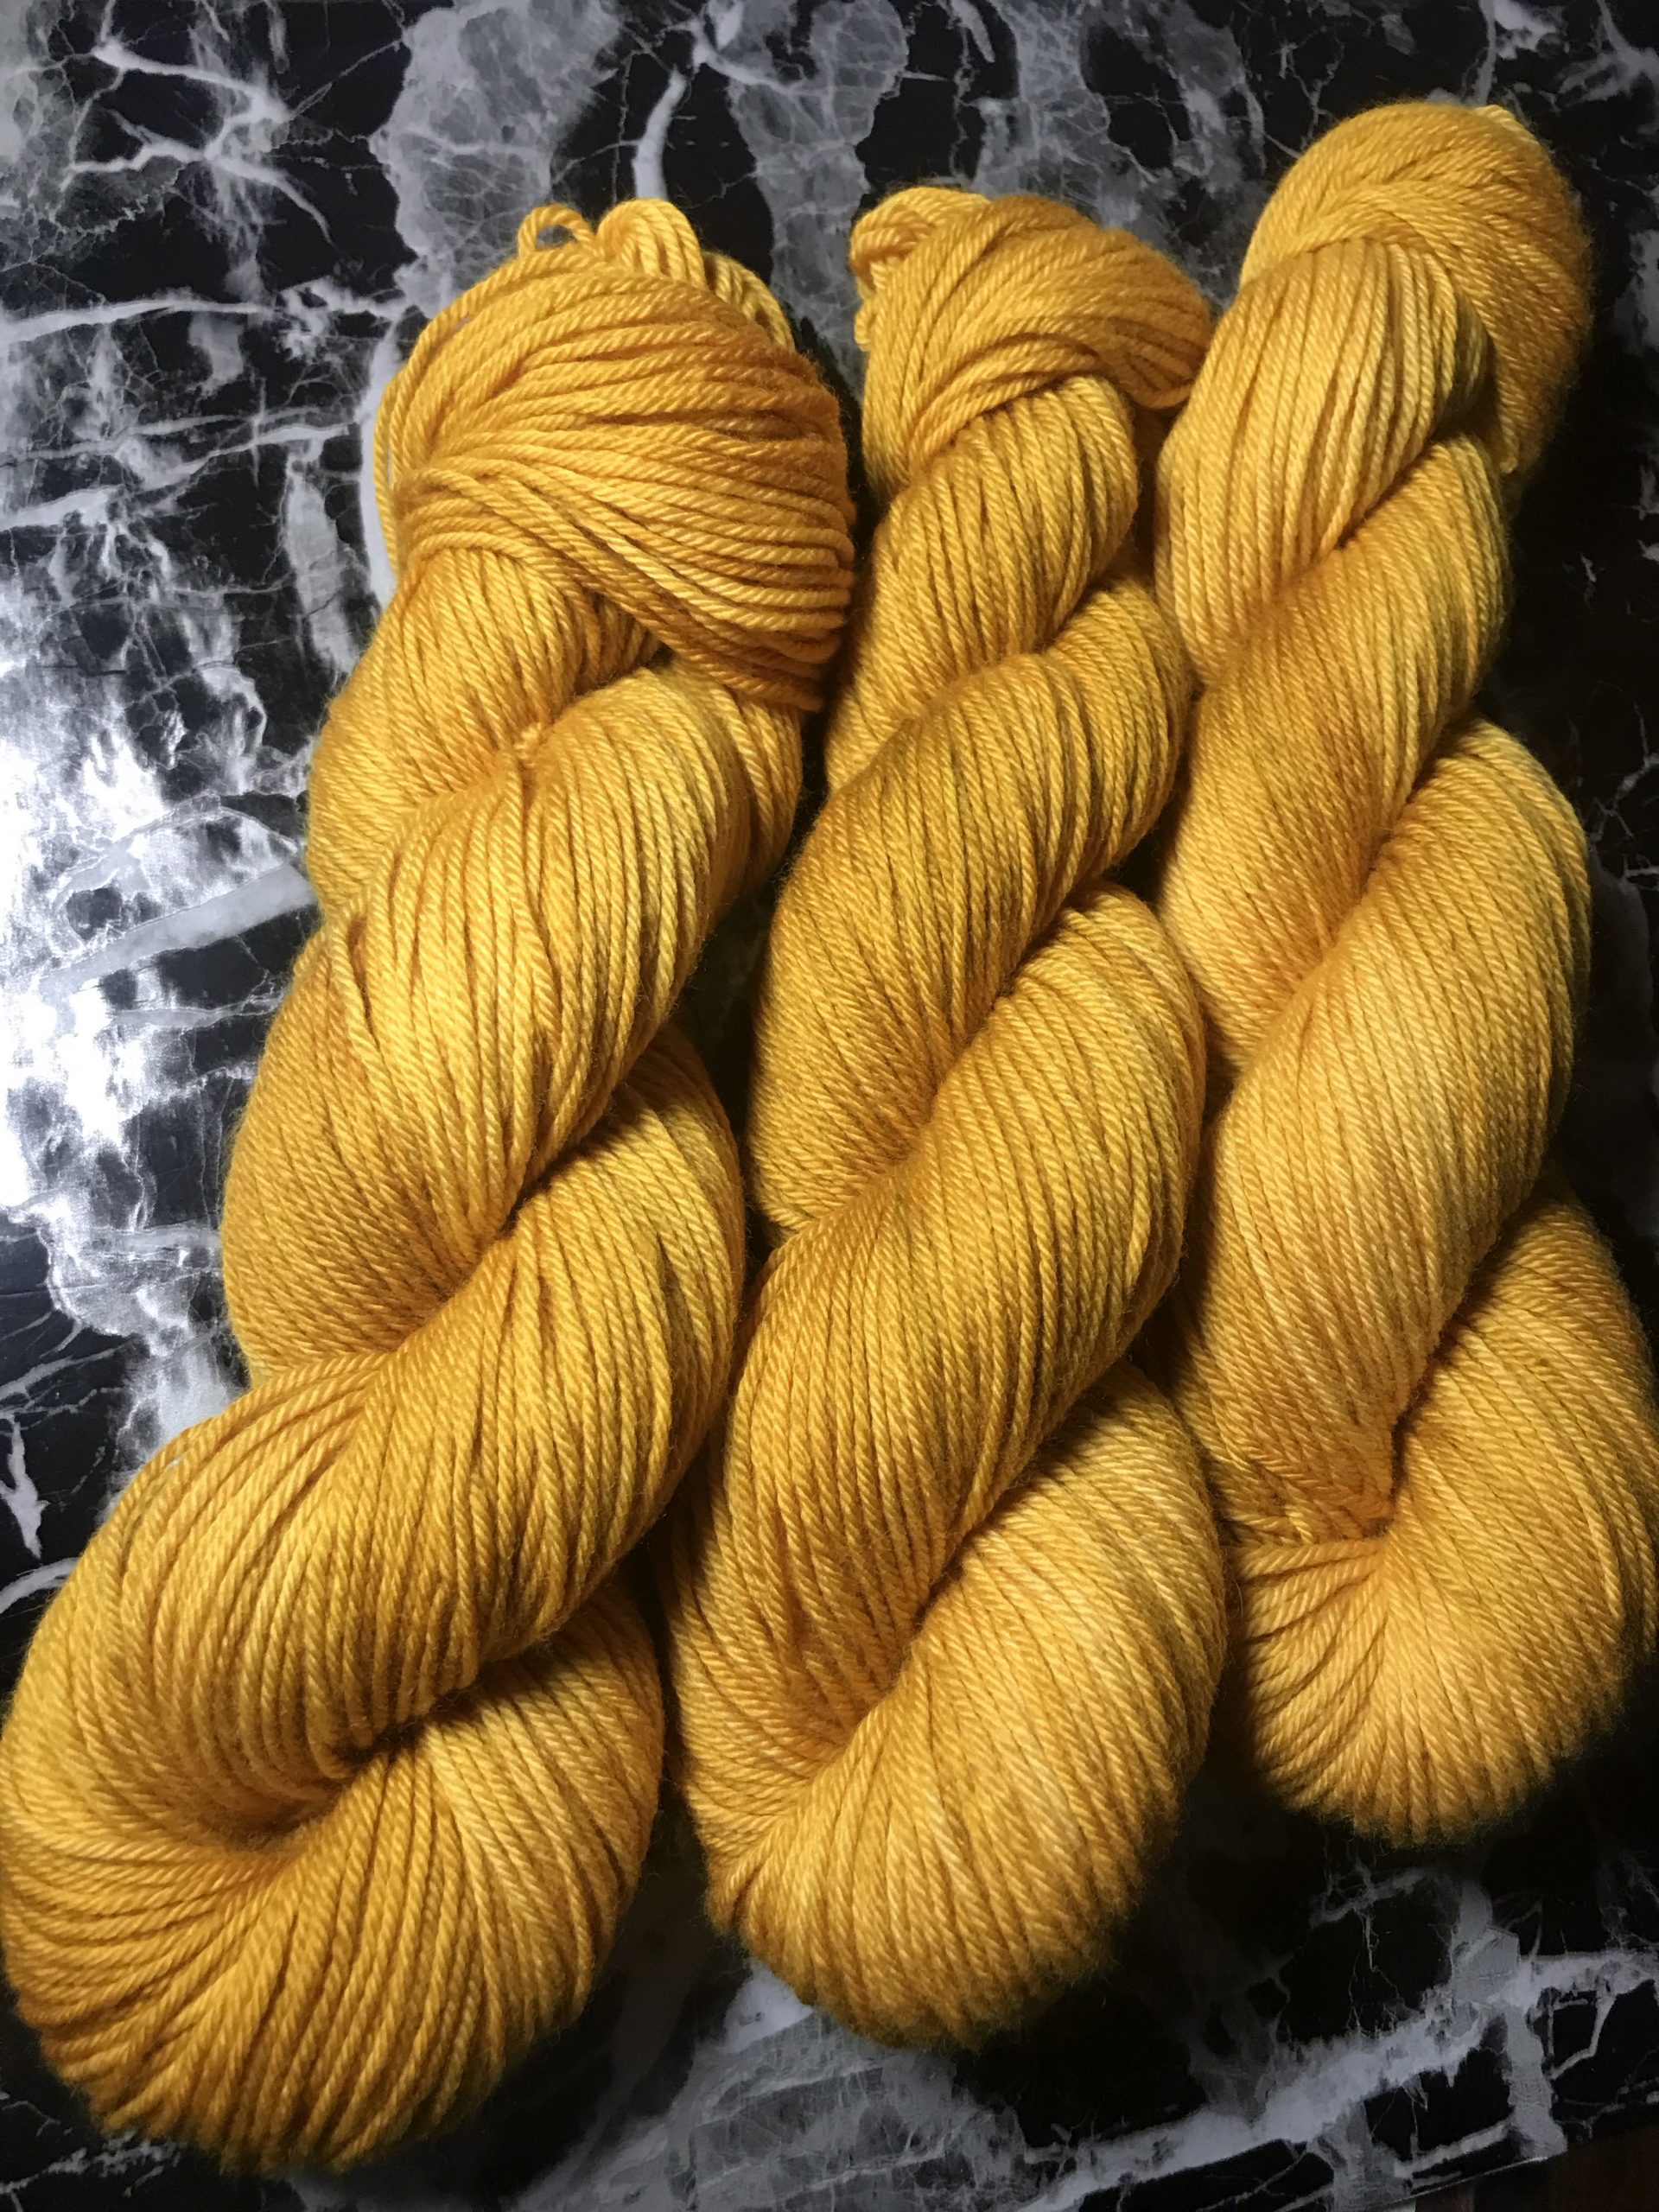 Marigold Yarn Kit – The Roof Crop